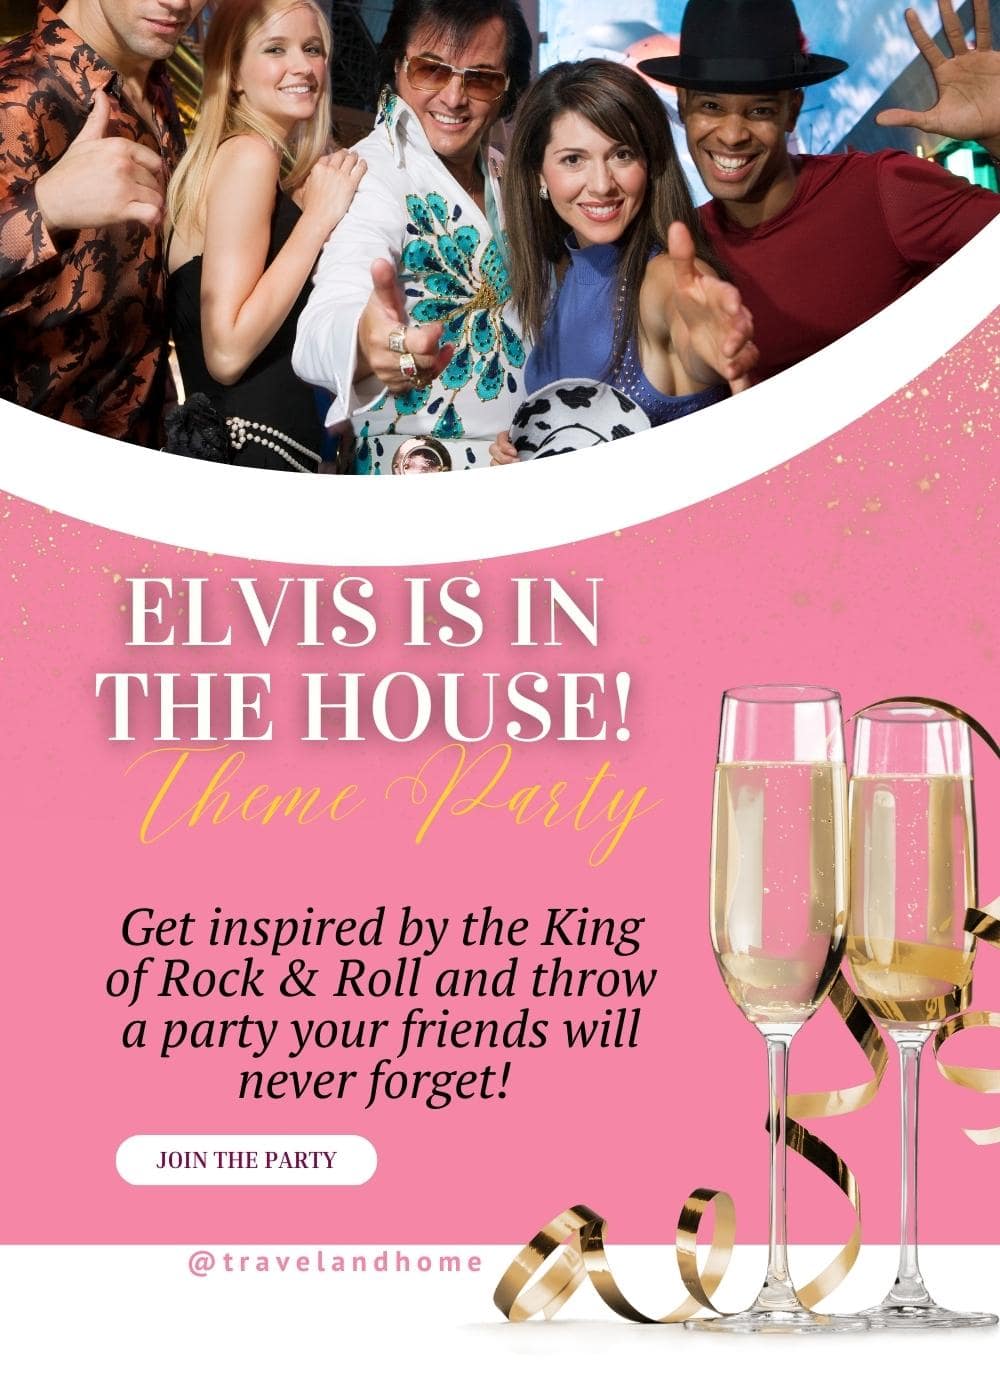 King of Rock Roll party ideas Elvis theme min